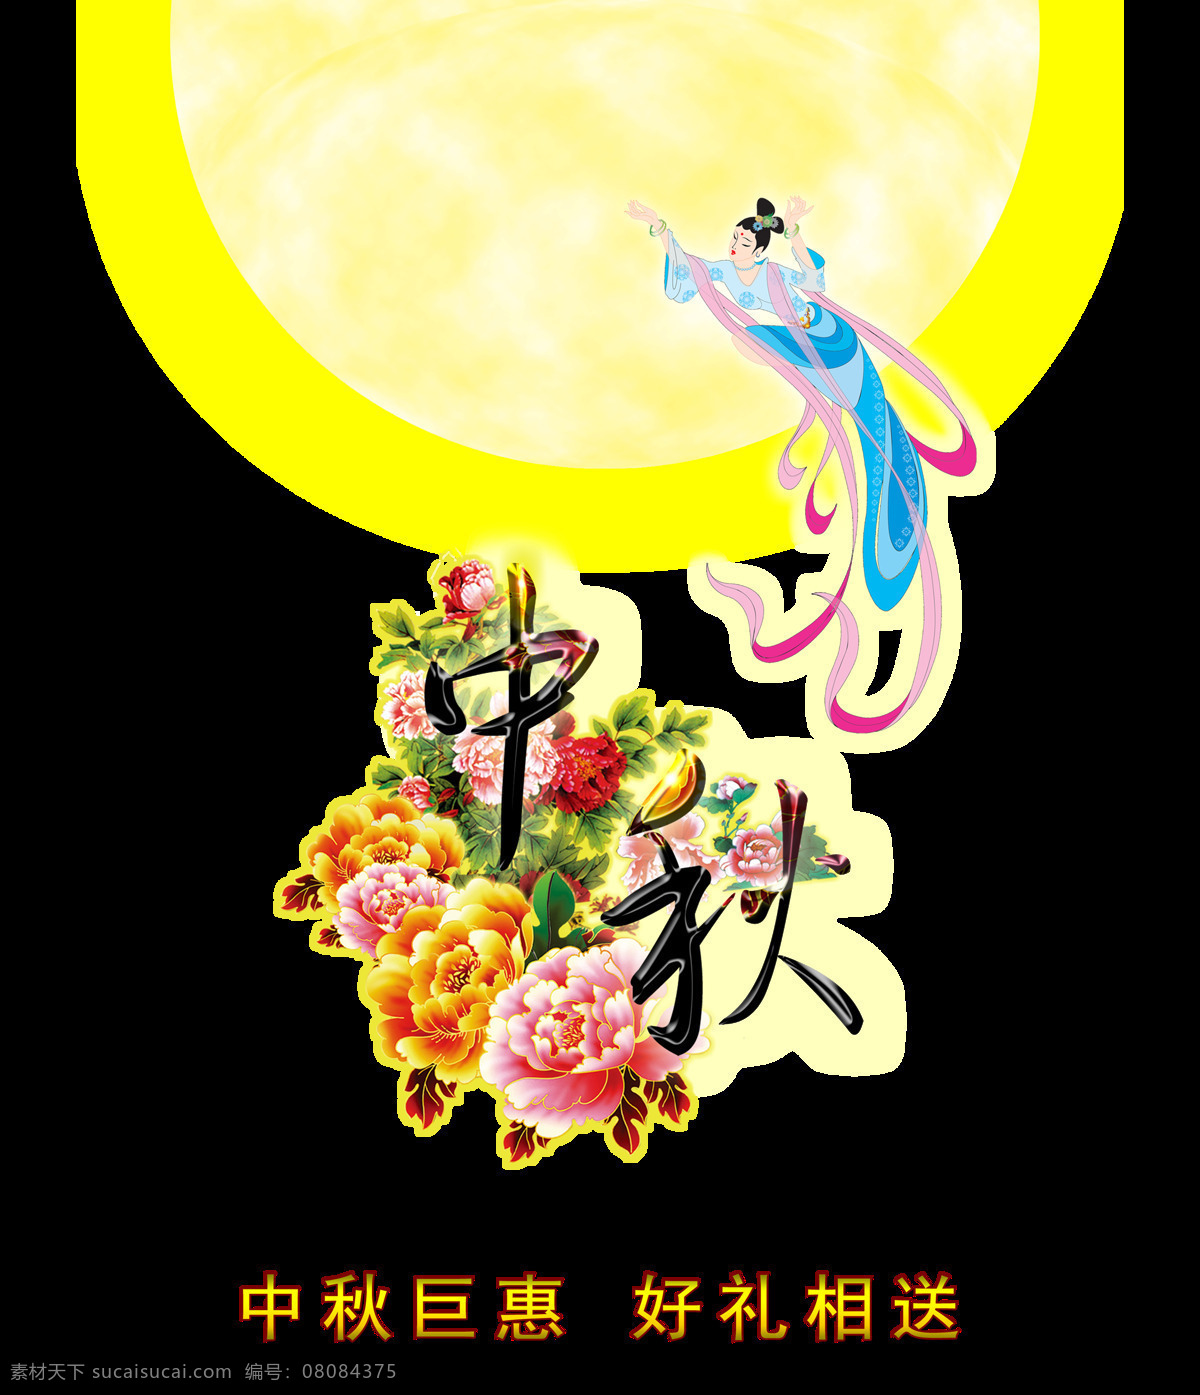 中秋节 嫦娥奔月 巨 惠好 礼 艺术 字 节日 字体 巨惠好礼 艺术字 月球月亮 海报